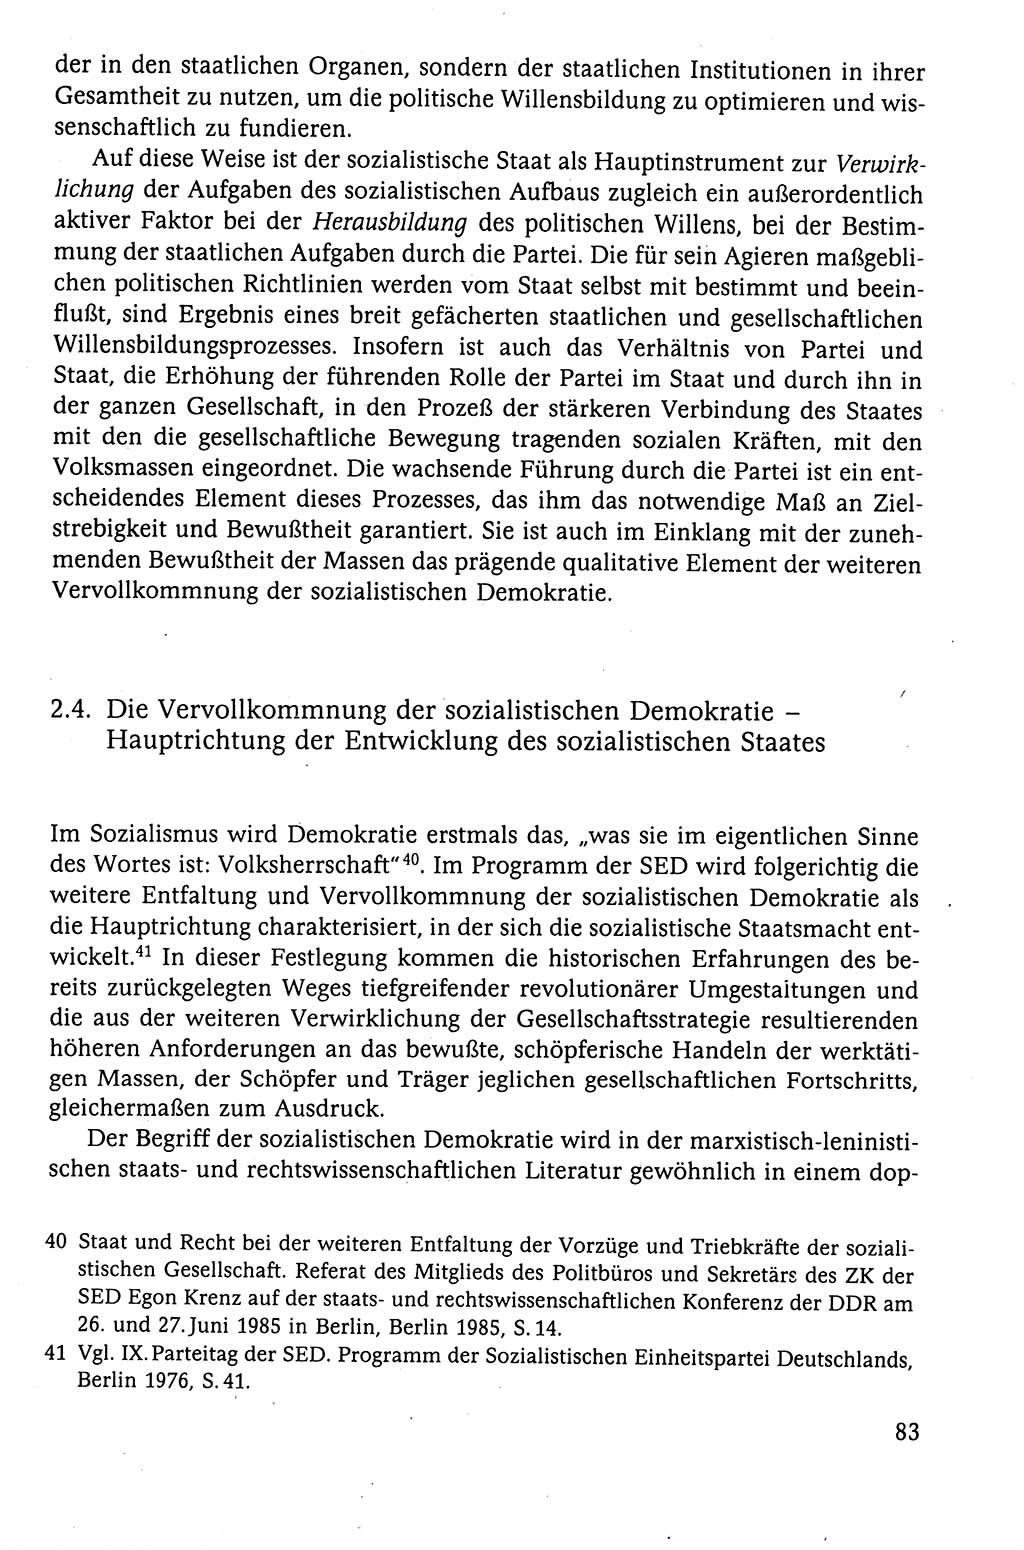 Der Staat im politischen System der DDR (Deutsche Demokratische Republik) 1986, Seite 83 (St. pol. Sys. DDR 1986, S. 83)